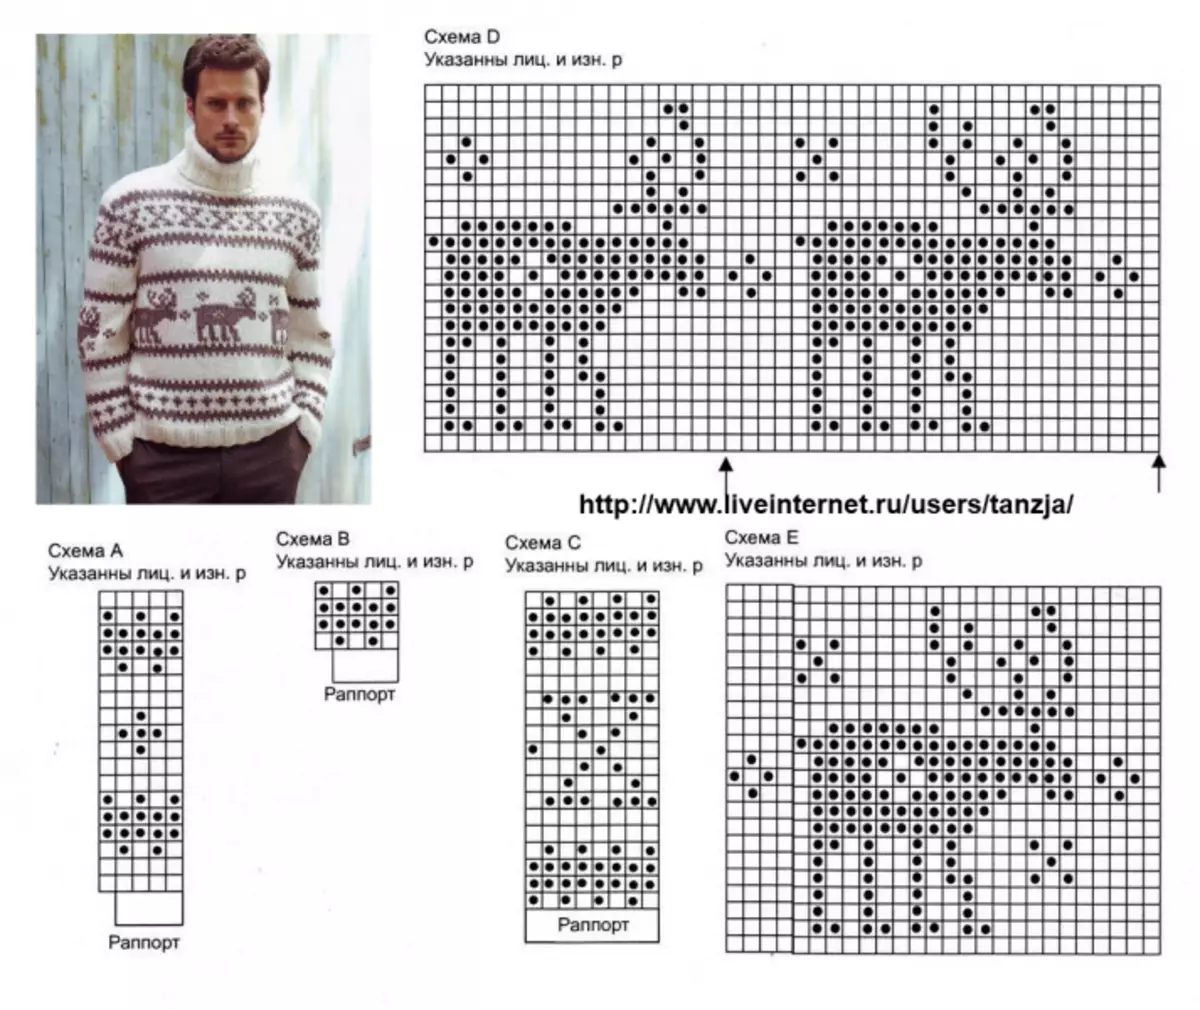 Արական եղջերու սվիտեր. Տրիկոտաժի ասեղների օրինակով տեսանյութով եւ լուսանկարով